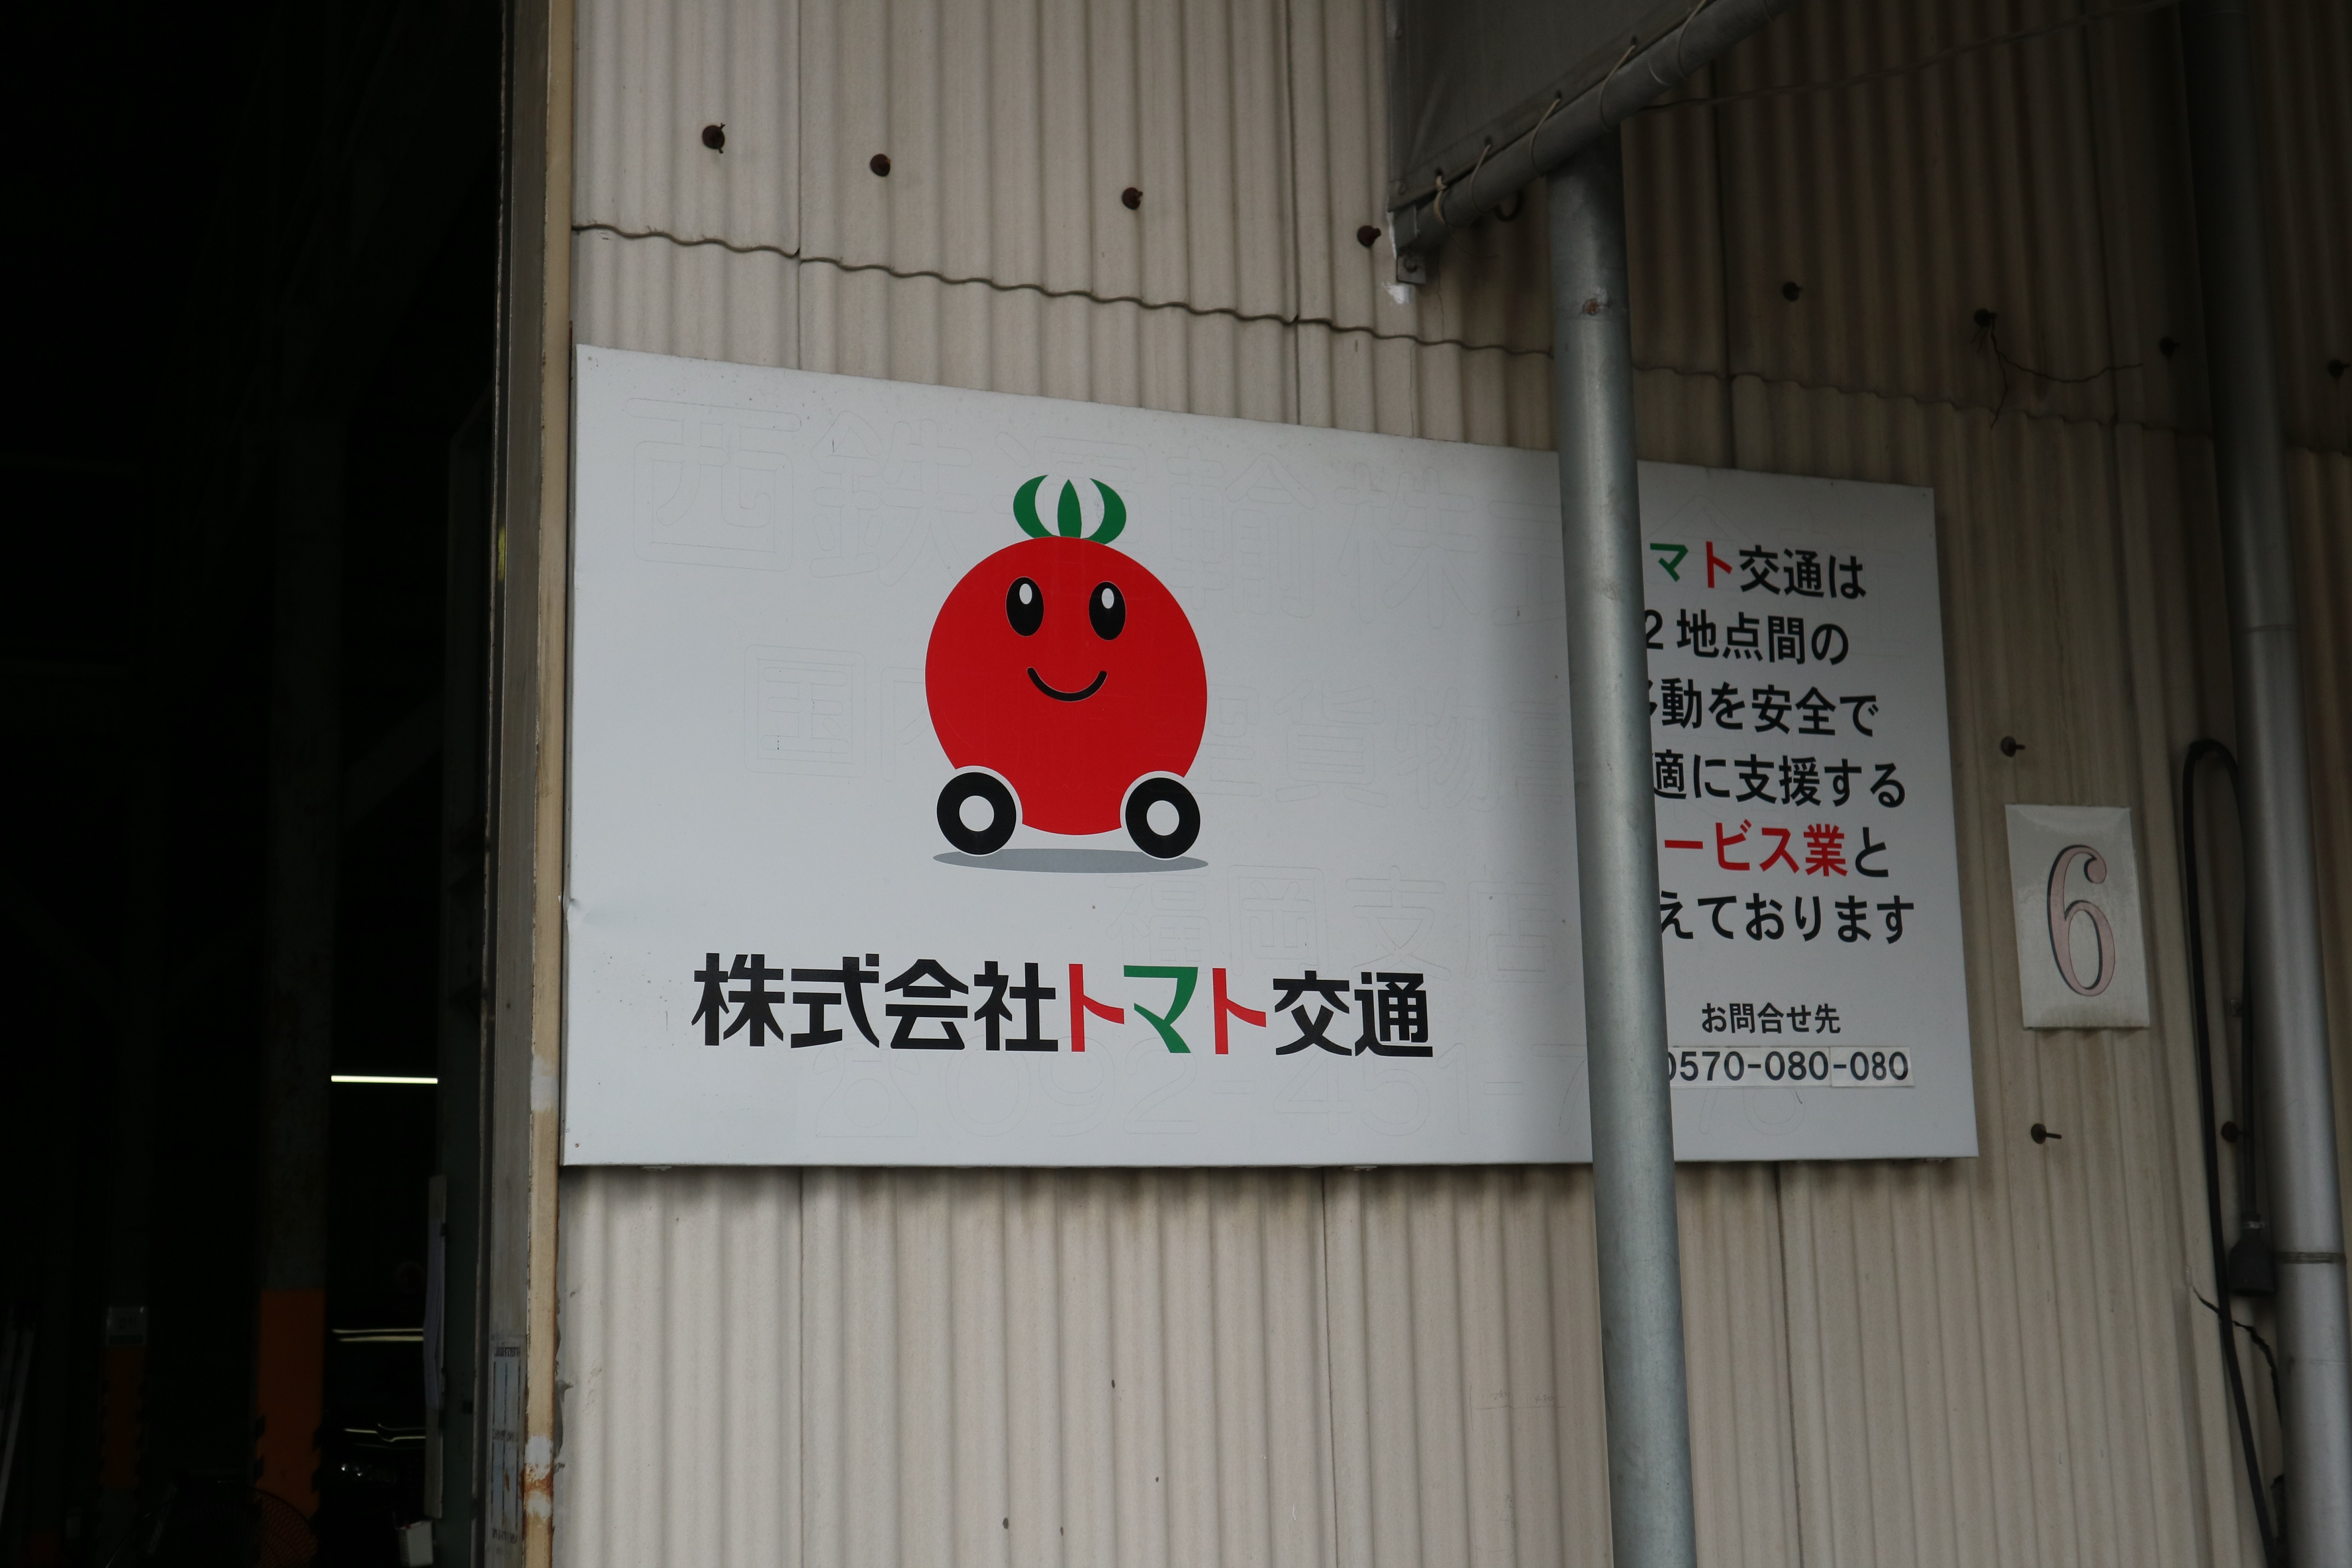 6/24 福岡市のトマト交通様へ見学に行きました。 - 勝山タクシー